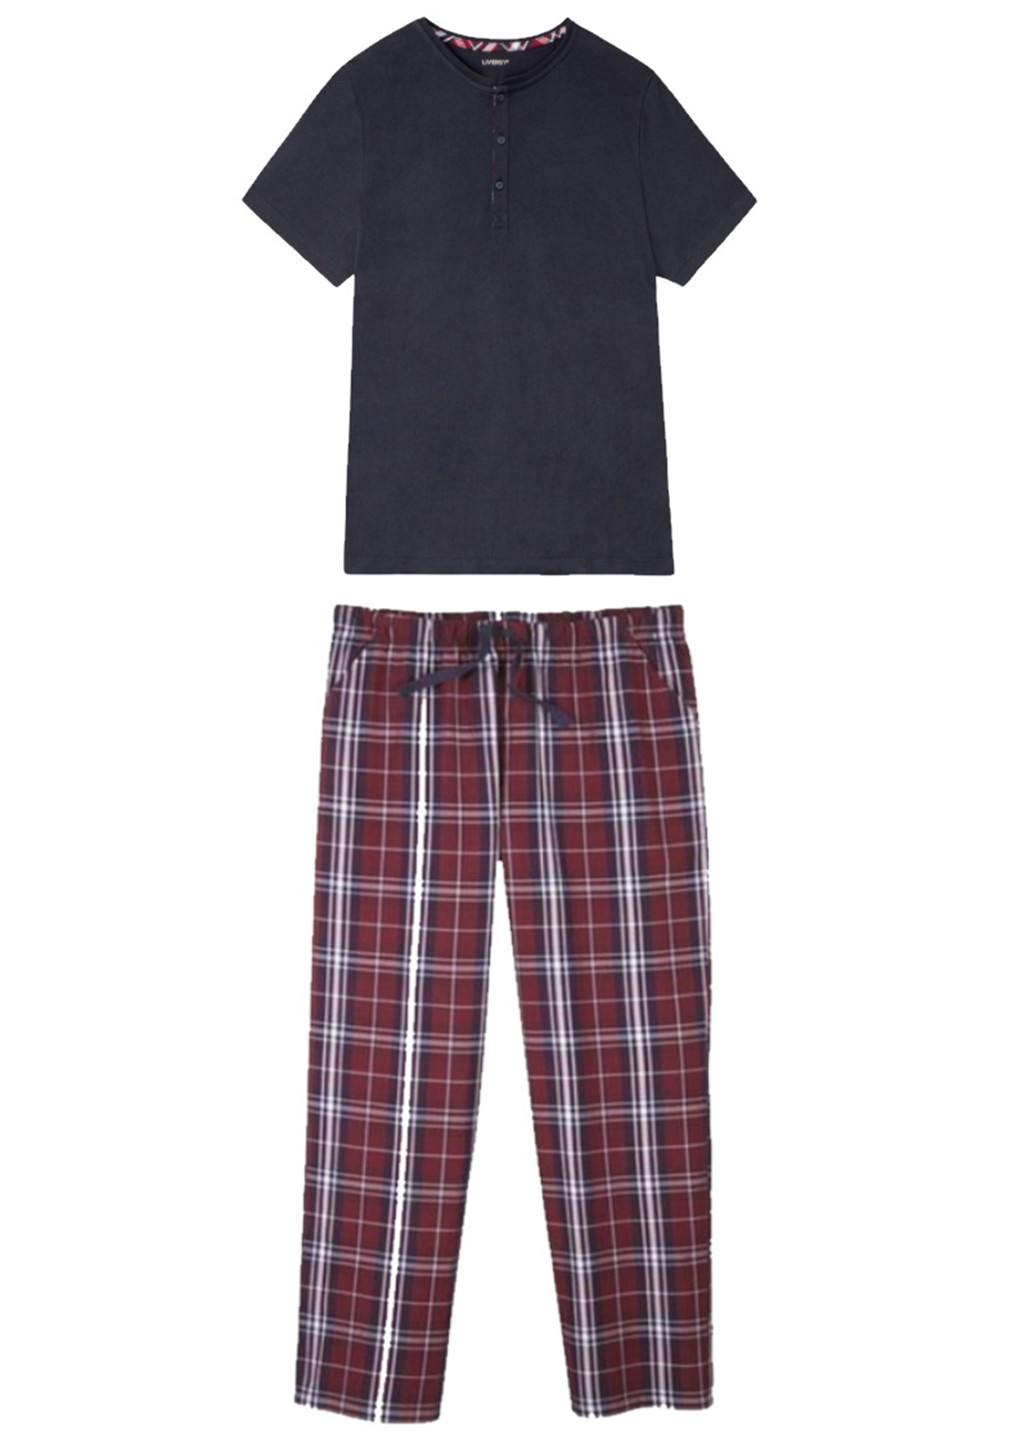 Піжама (футболка, штани) Livergy футболка + штани клітинка комбінована домашня бавовна, трикотаж